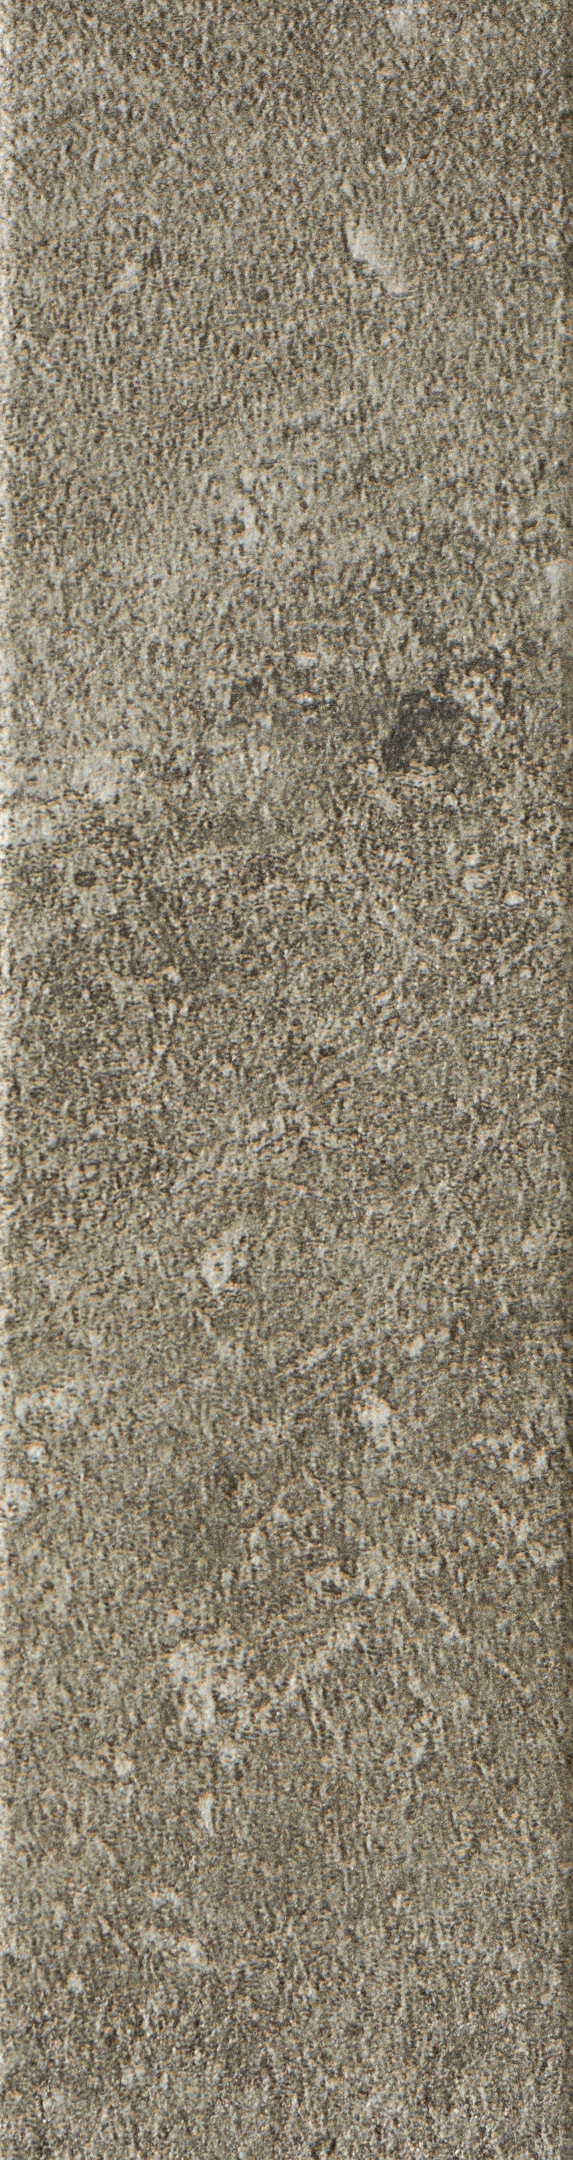 Клинкерная плитка Керамин Юта 2 серая 245х65х7 мм (34 шт.=0,54 кв.м) клинкерная плитка юта 2 серый 24 5х6 5 керамин